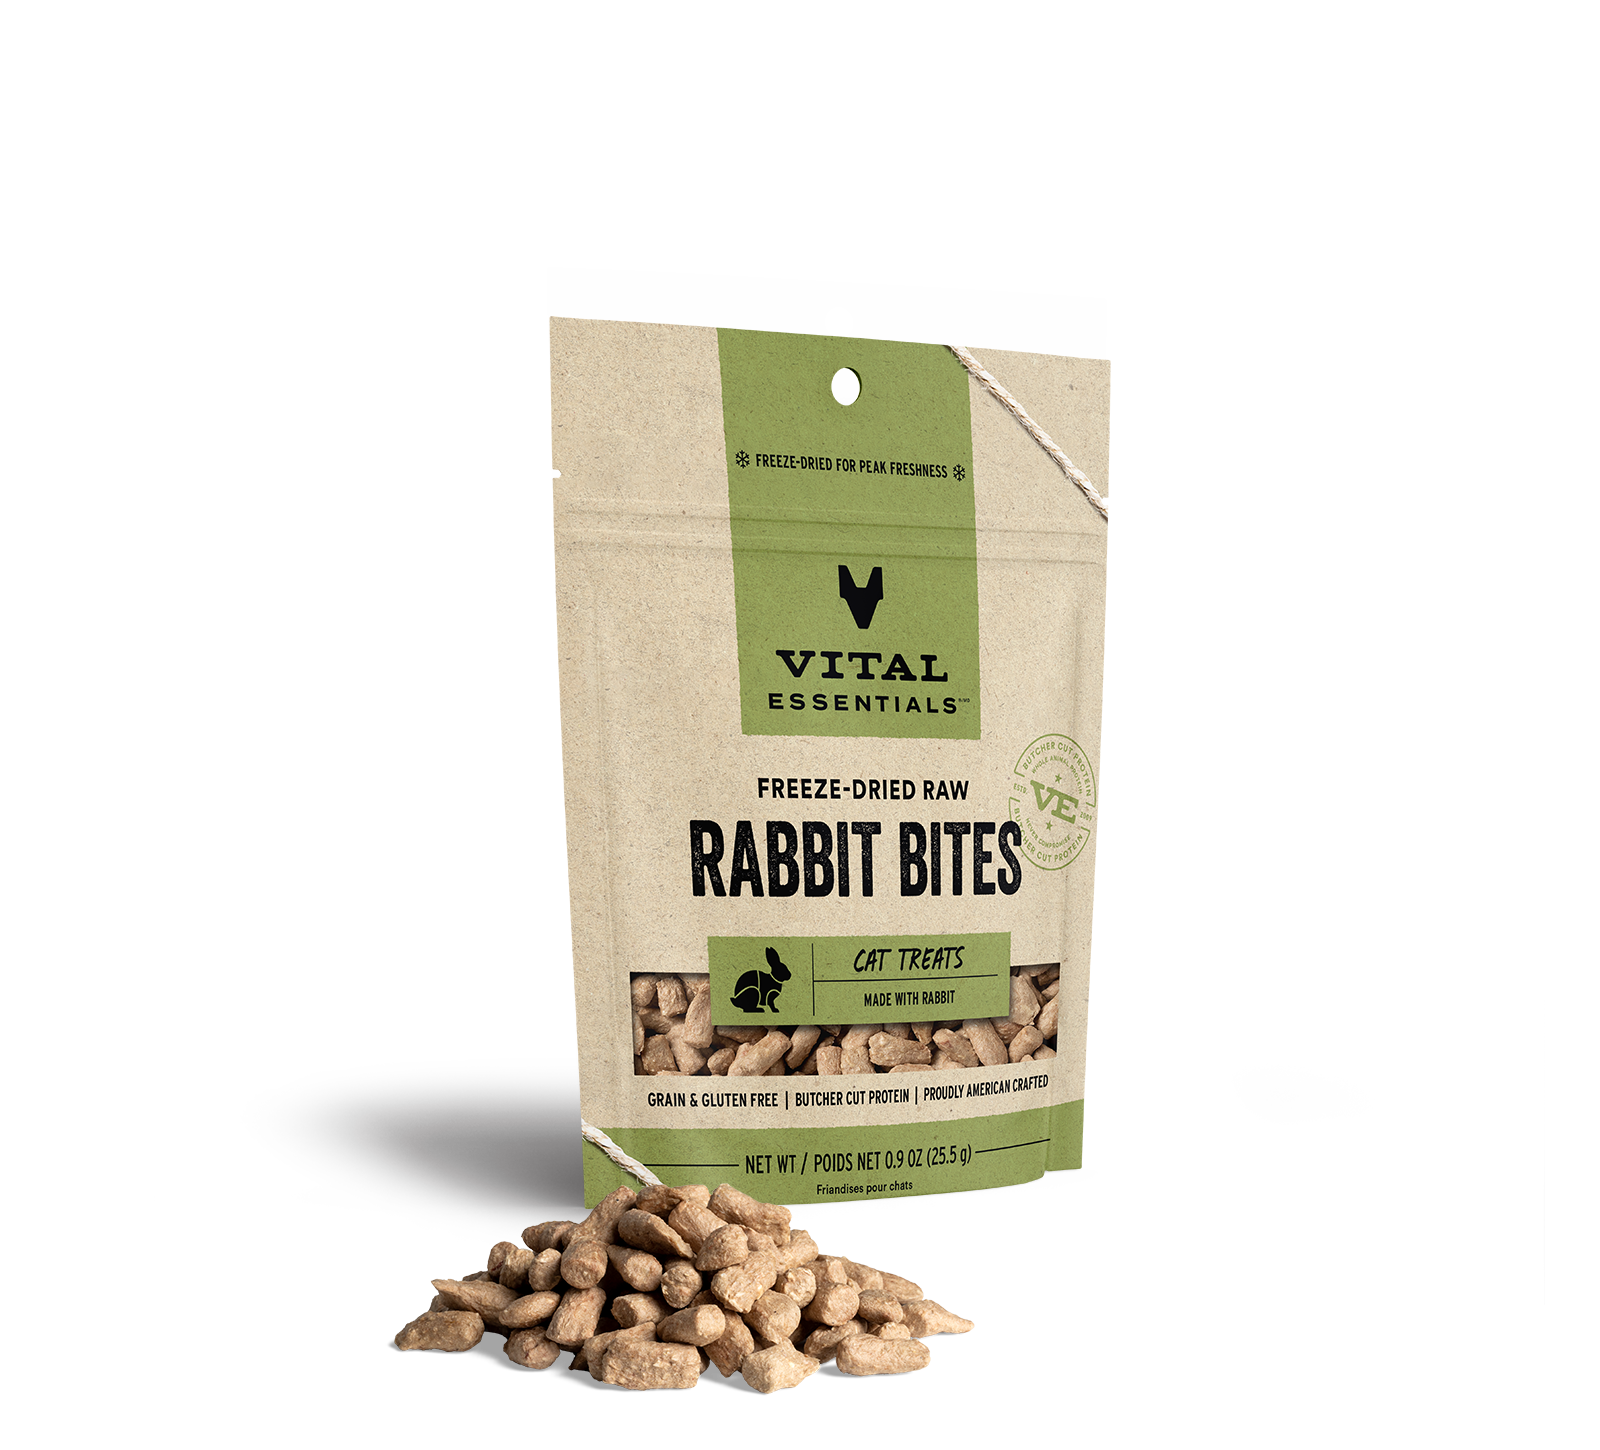 Vital Essentials Freeze-Dried Rabbit Bites Cat Treats, 0.9 oz - Health/First Aid